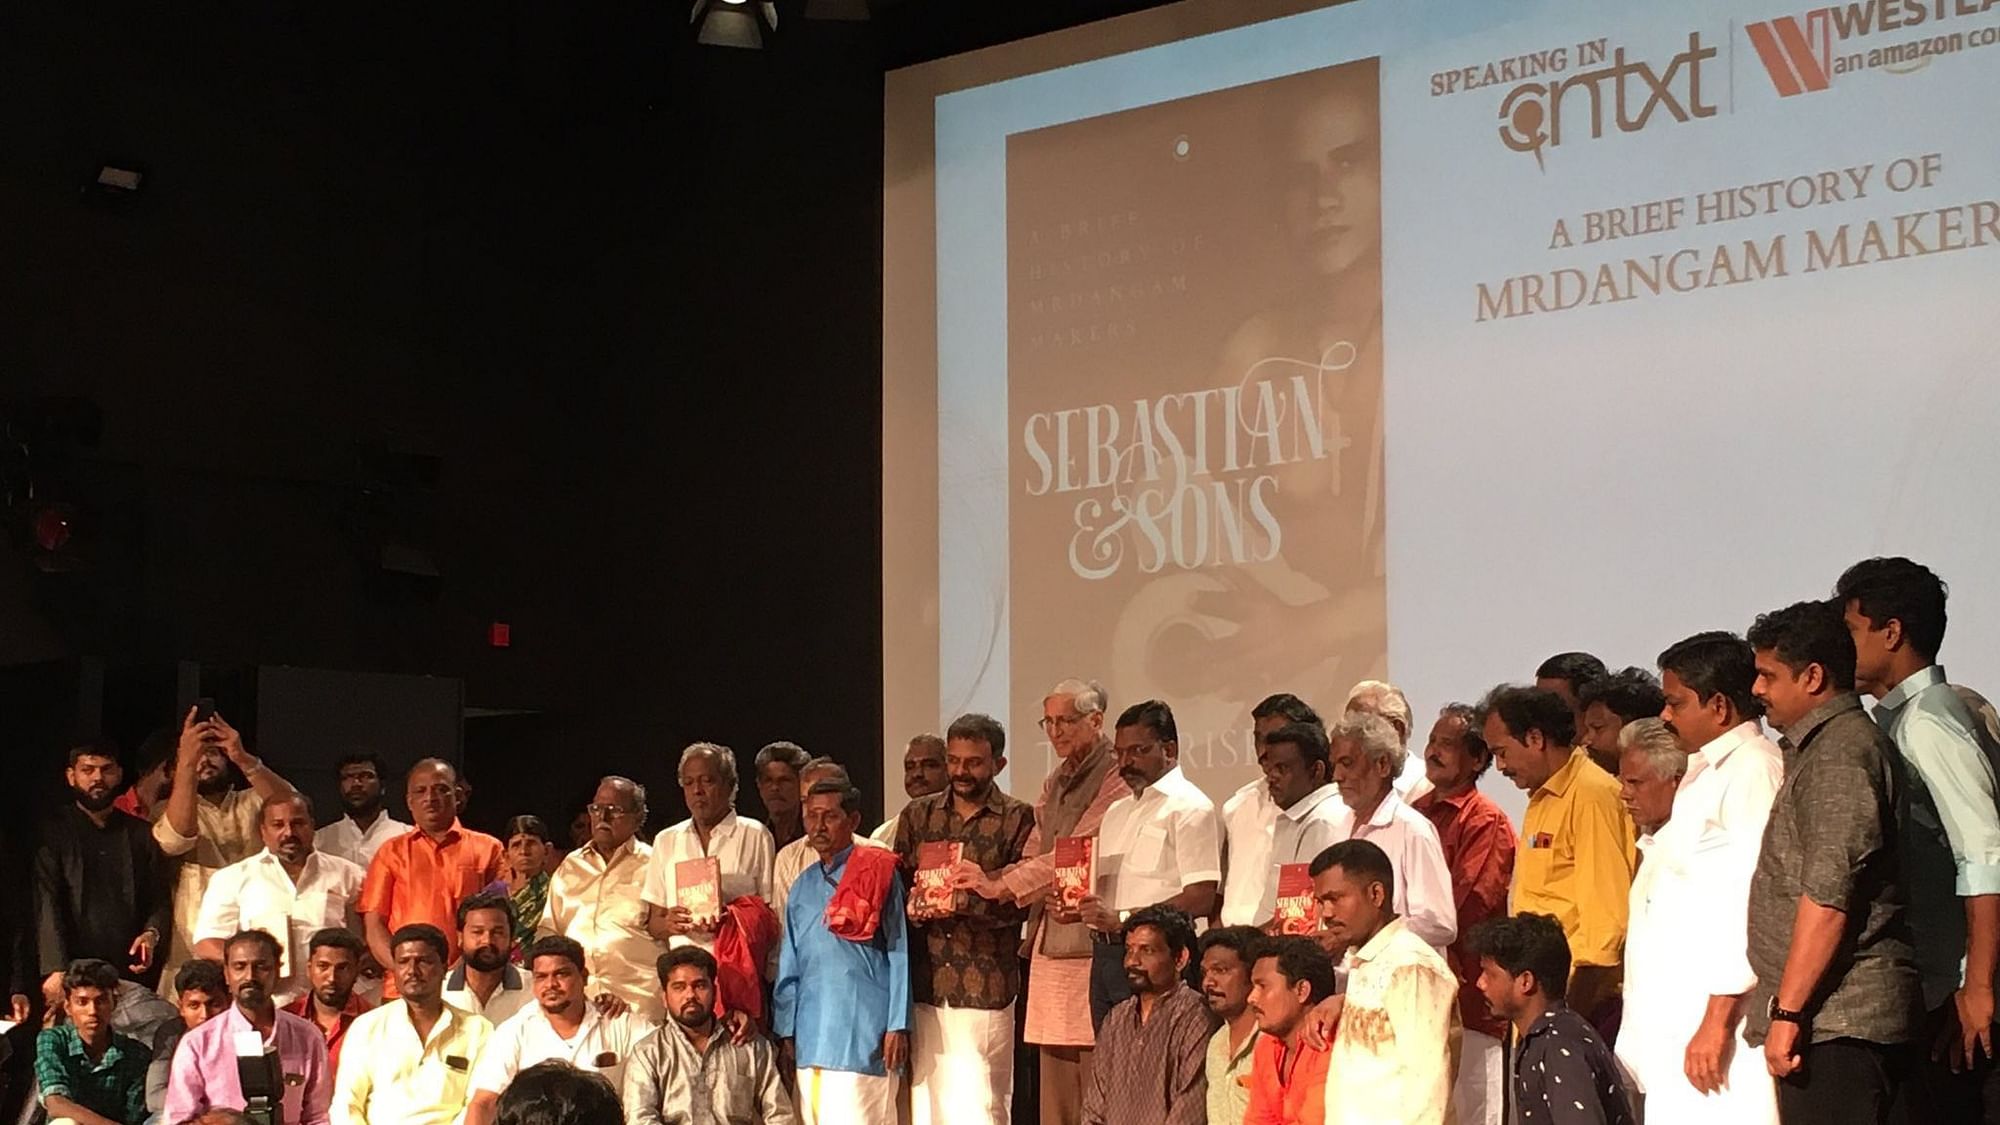 sebastian and sons a brief history of mrdangam makers